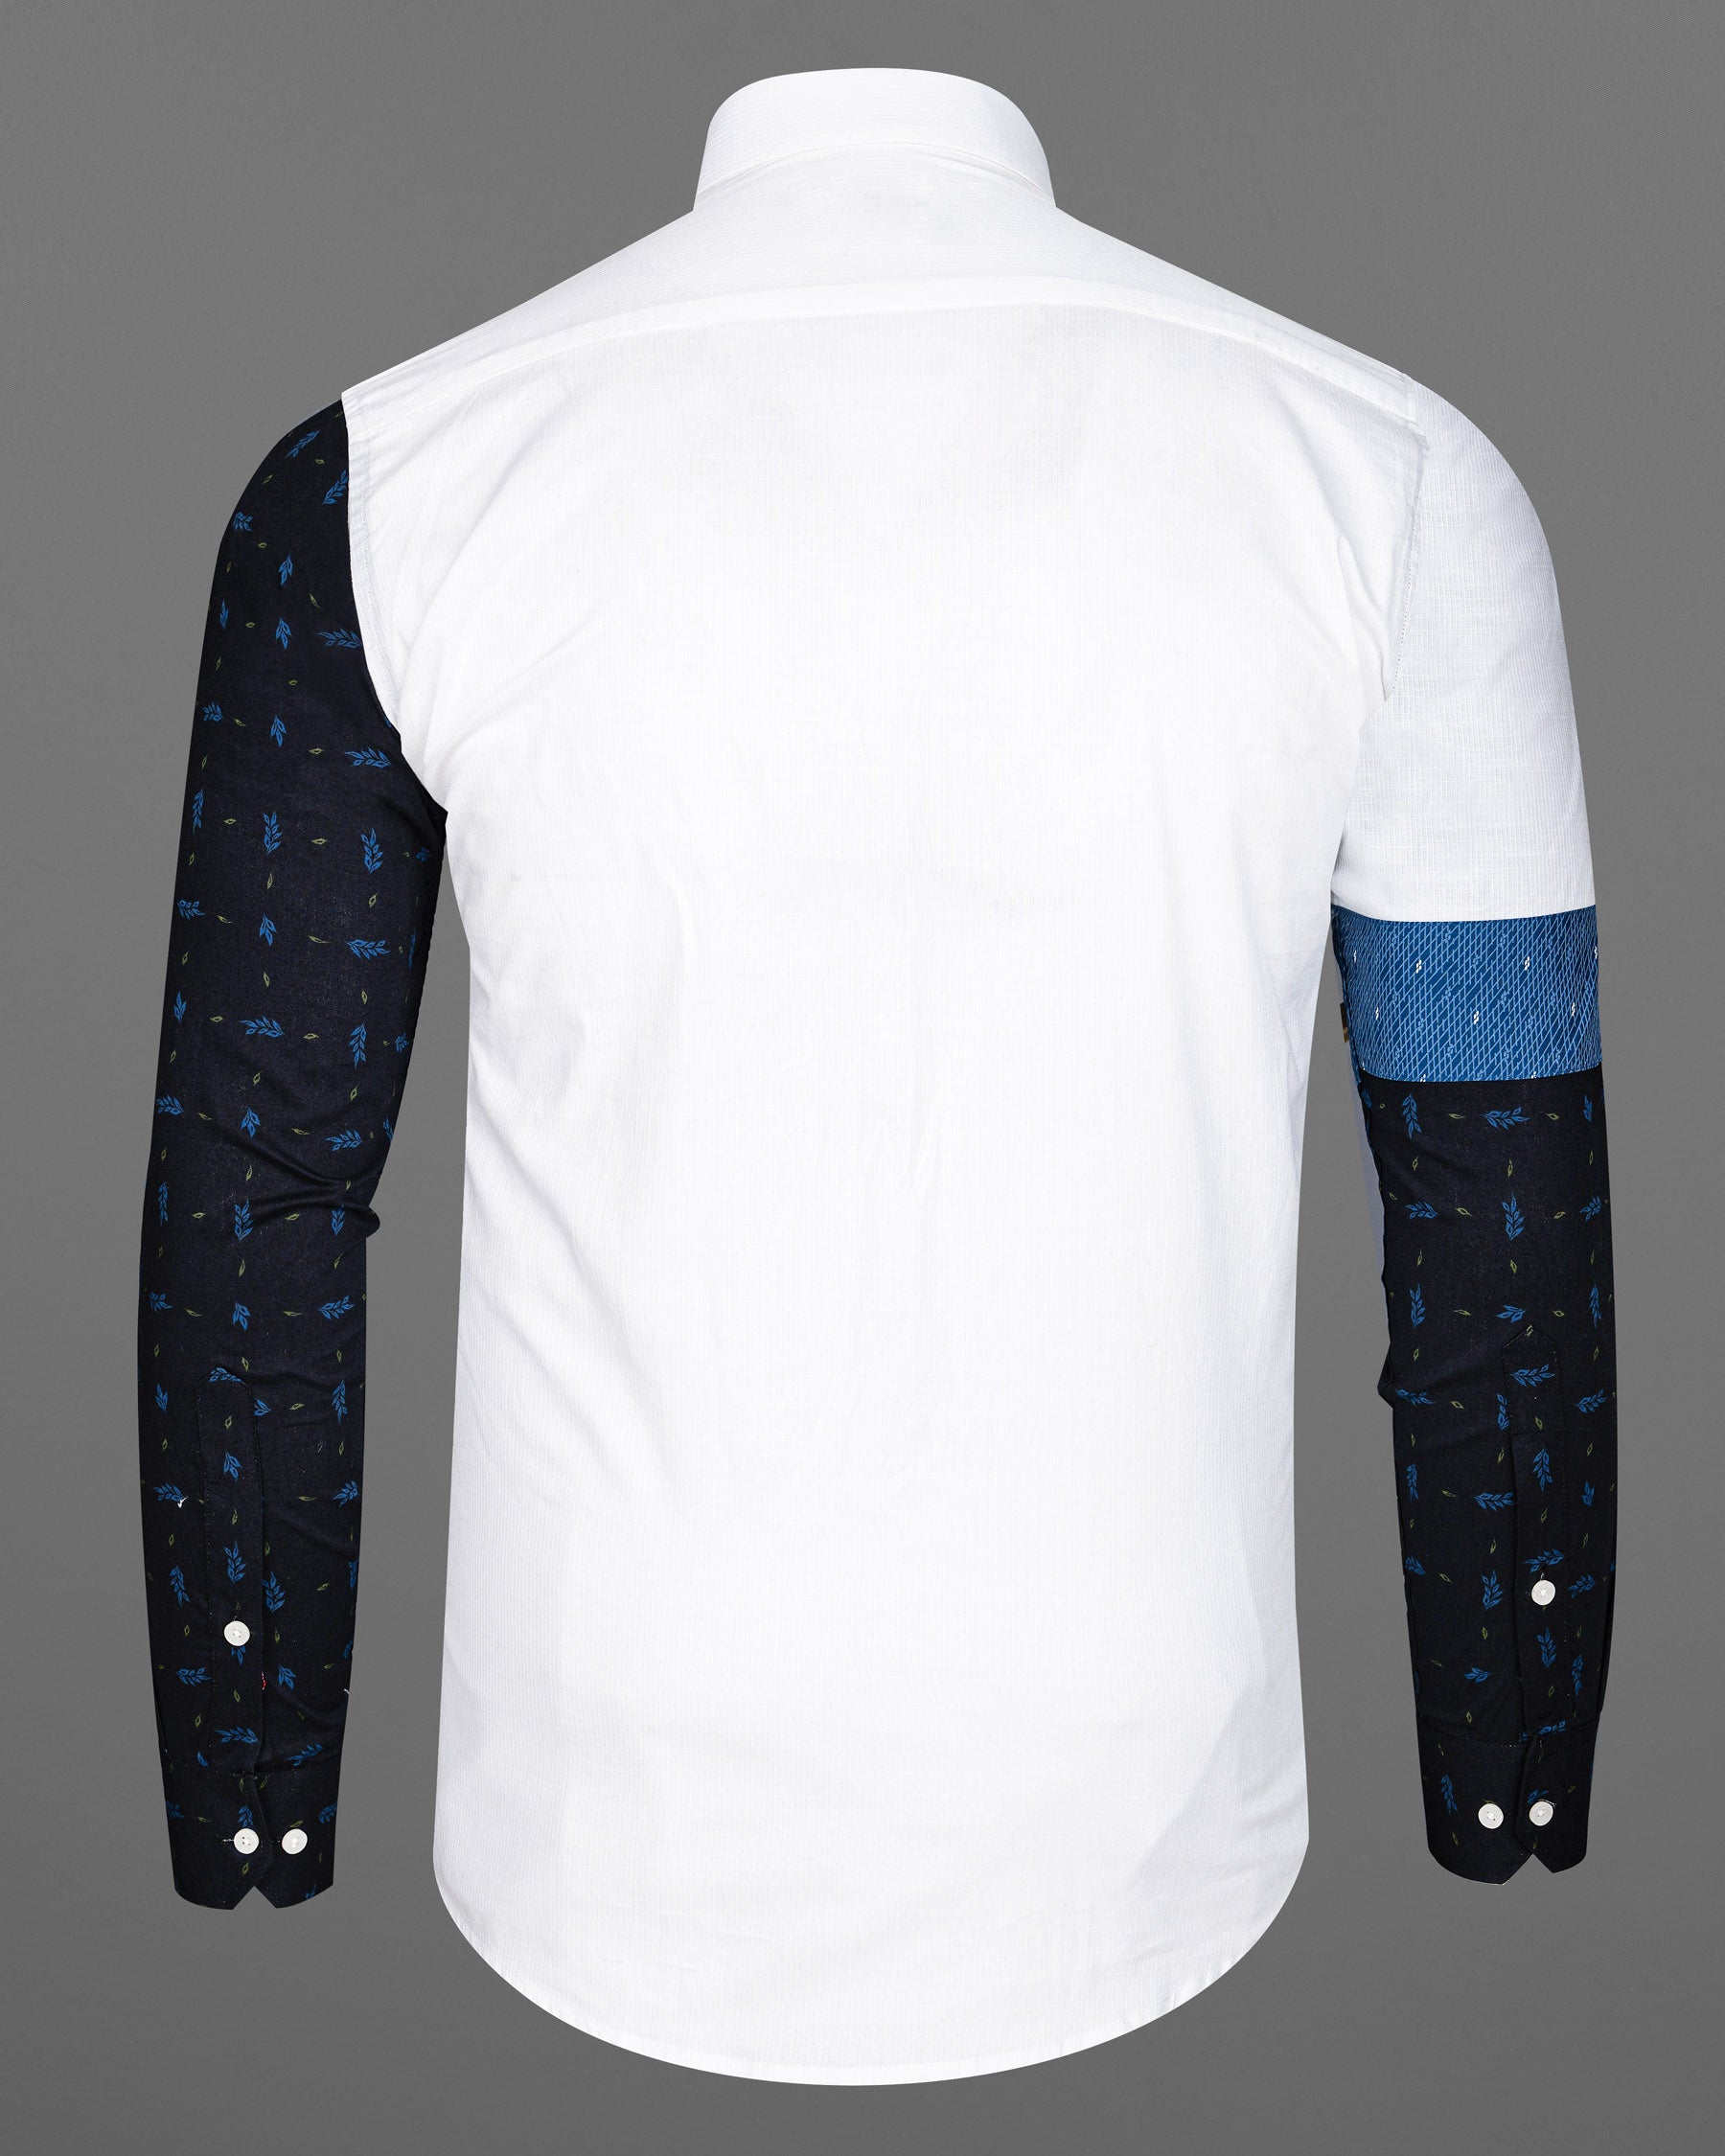 Bright White with Azure Blue and Black Dobby Textured Designer Shirt 7856-P148-38, 7856-P148-39, 7856-P148-40, 7856-P148-42, 7856-P148-44, 7856-P148-46, 7856-P148-48, 7856-P148-50, 7856-P148-52